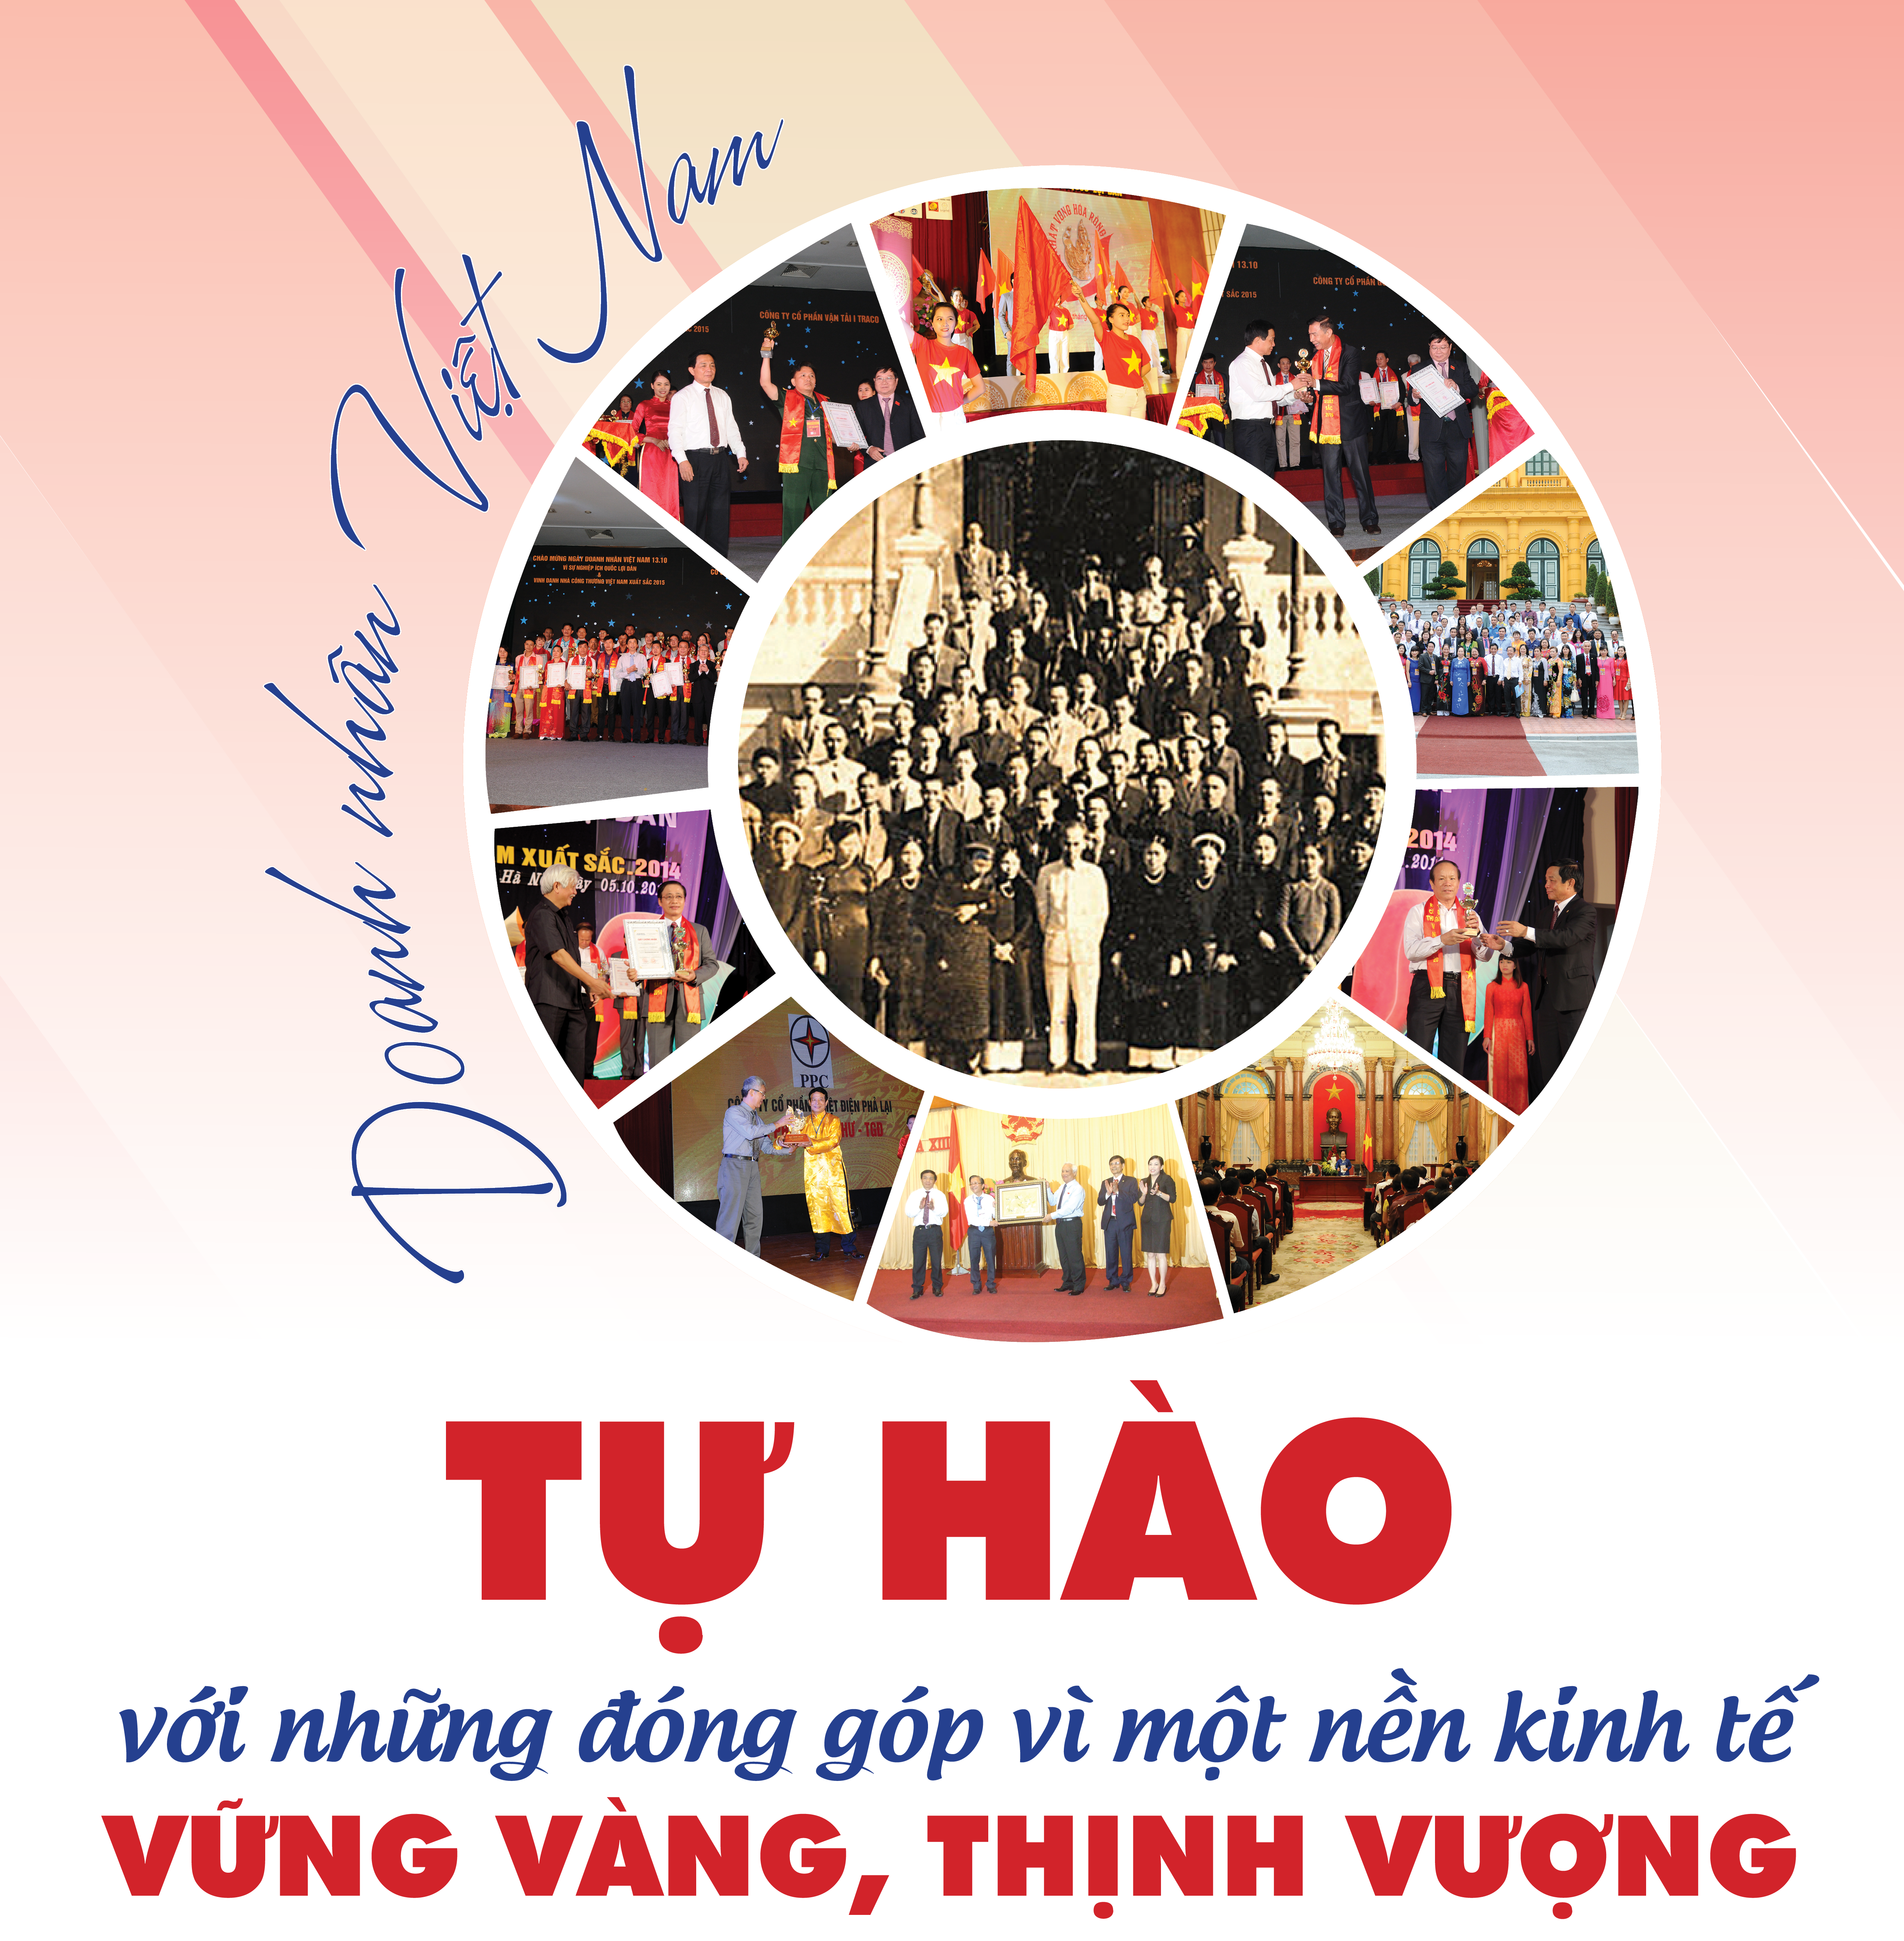 Doanh nhân Việt Nam tự hào với những đóng góp vì một nền kinh tế vững vàng, thịnh vượng